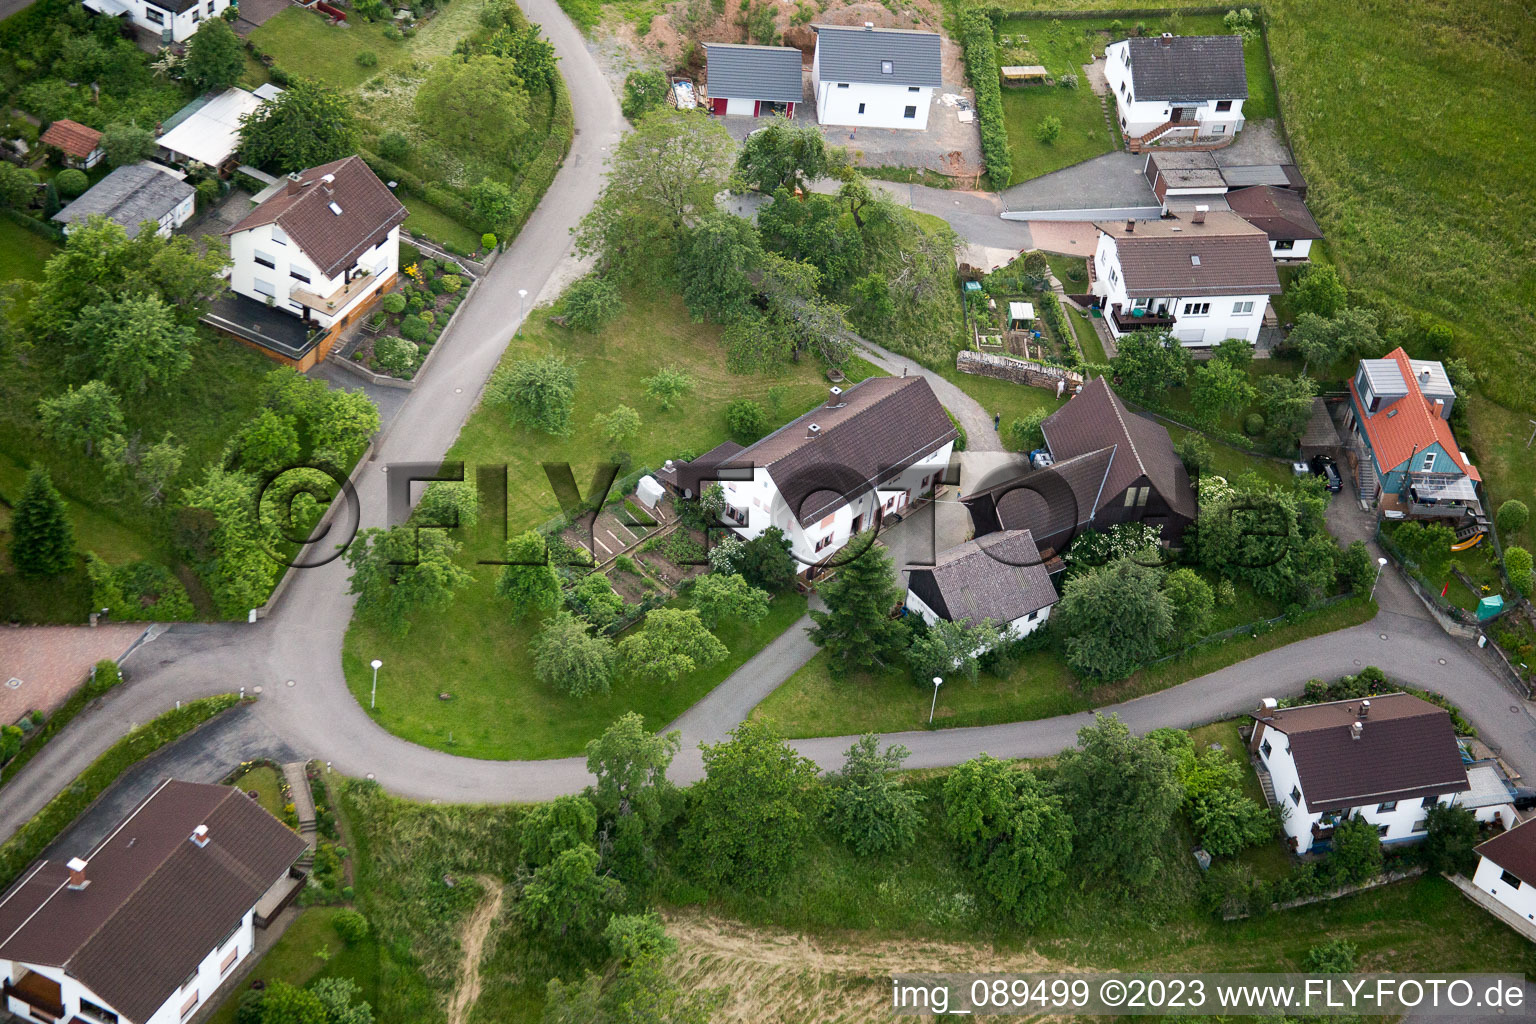 Brombach im Bundesland Baden-Württemberg, Deutschland aus der Drohnenperspektive